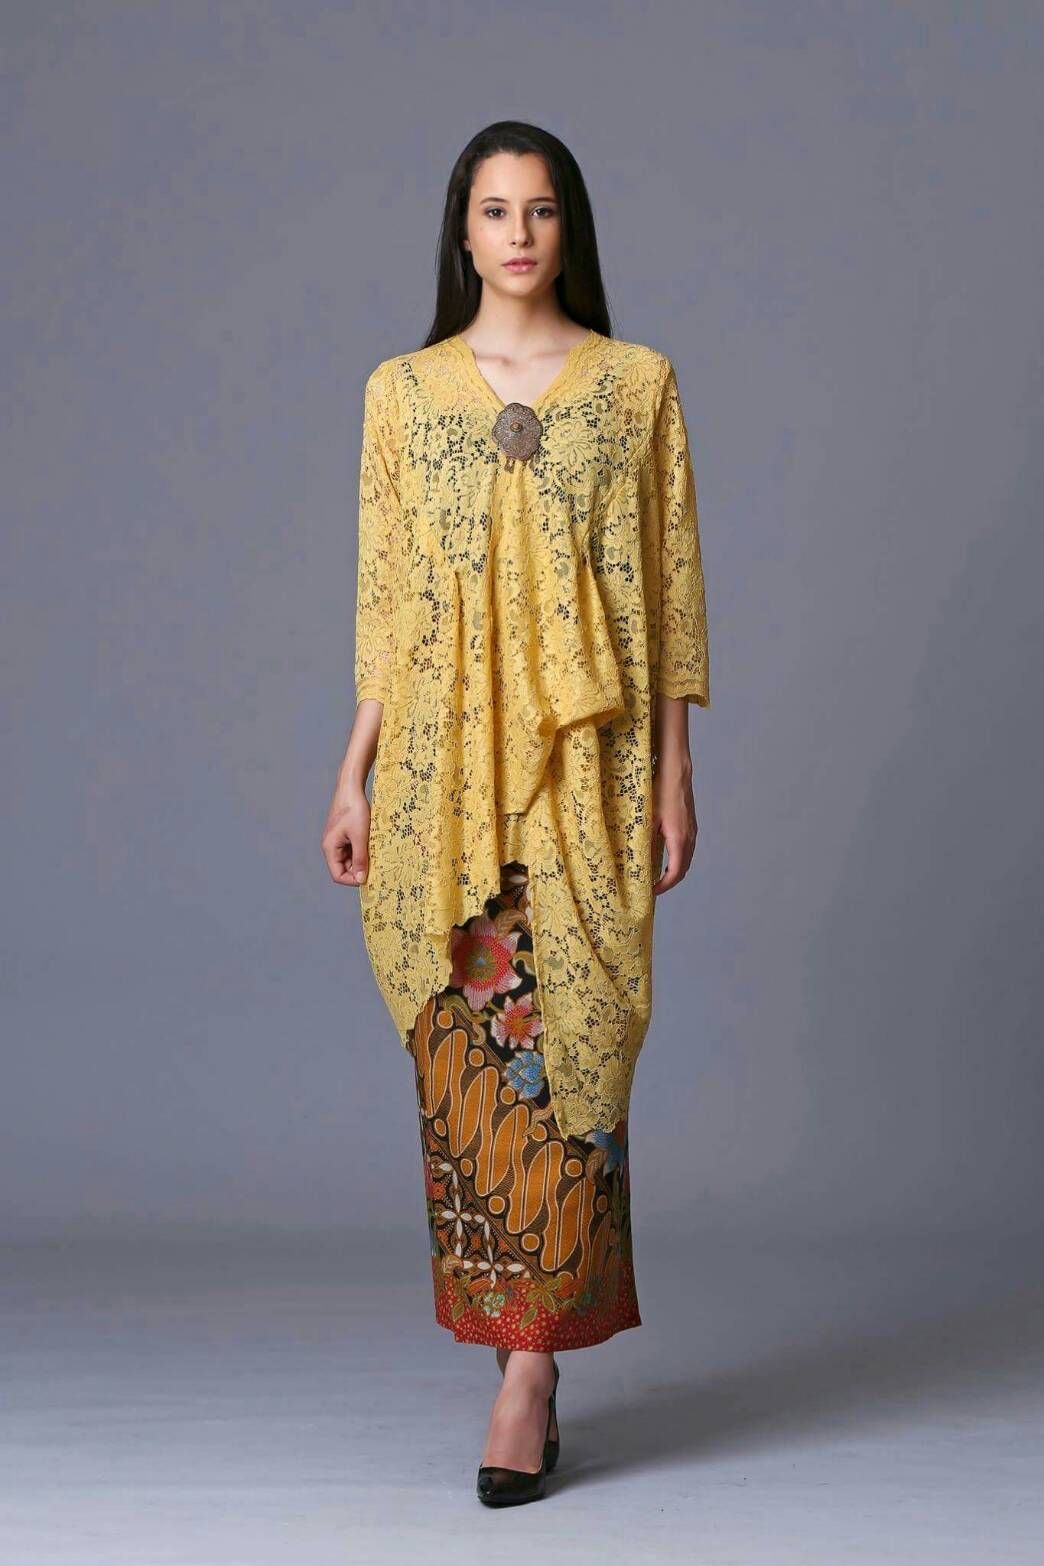 Model baju kebaya modern kombinasi batik